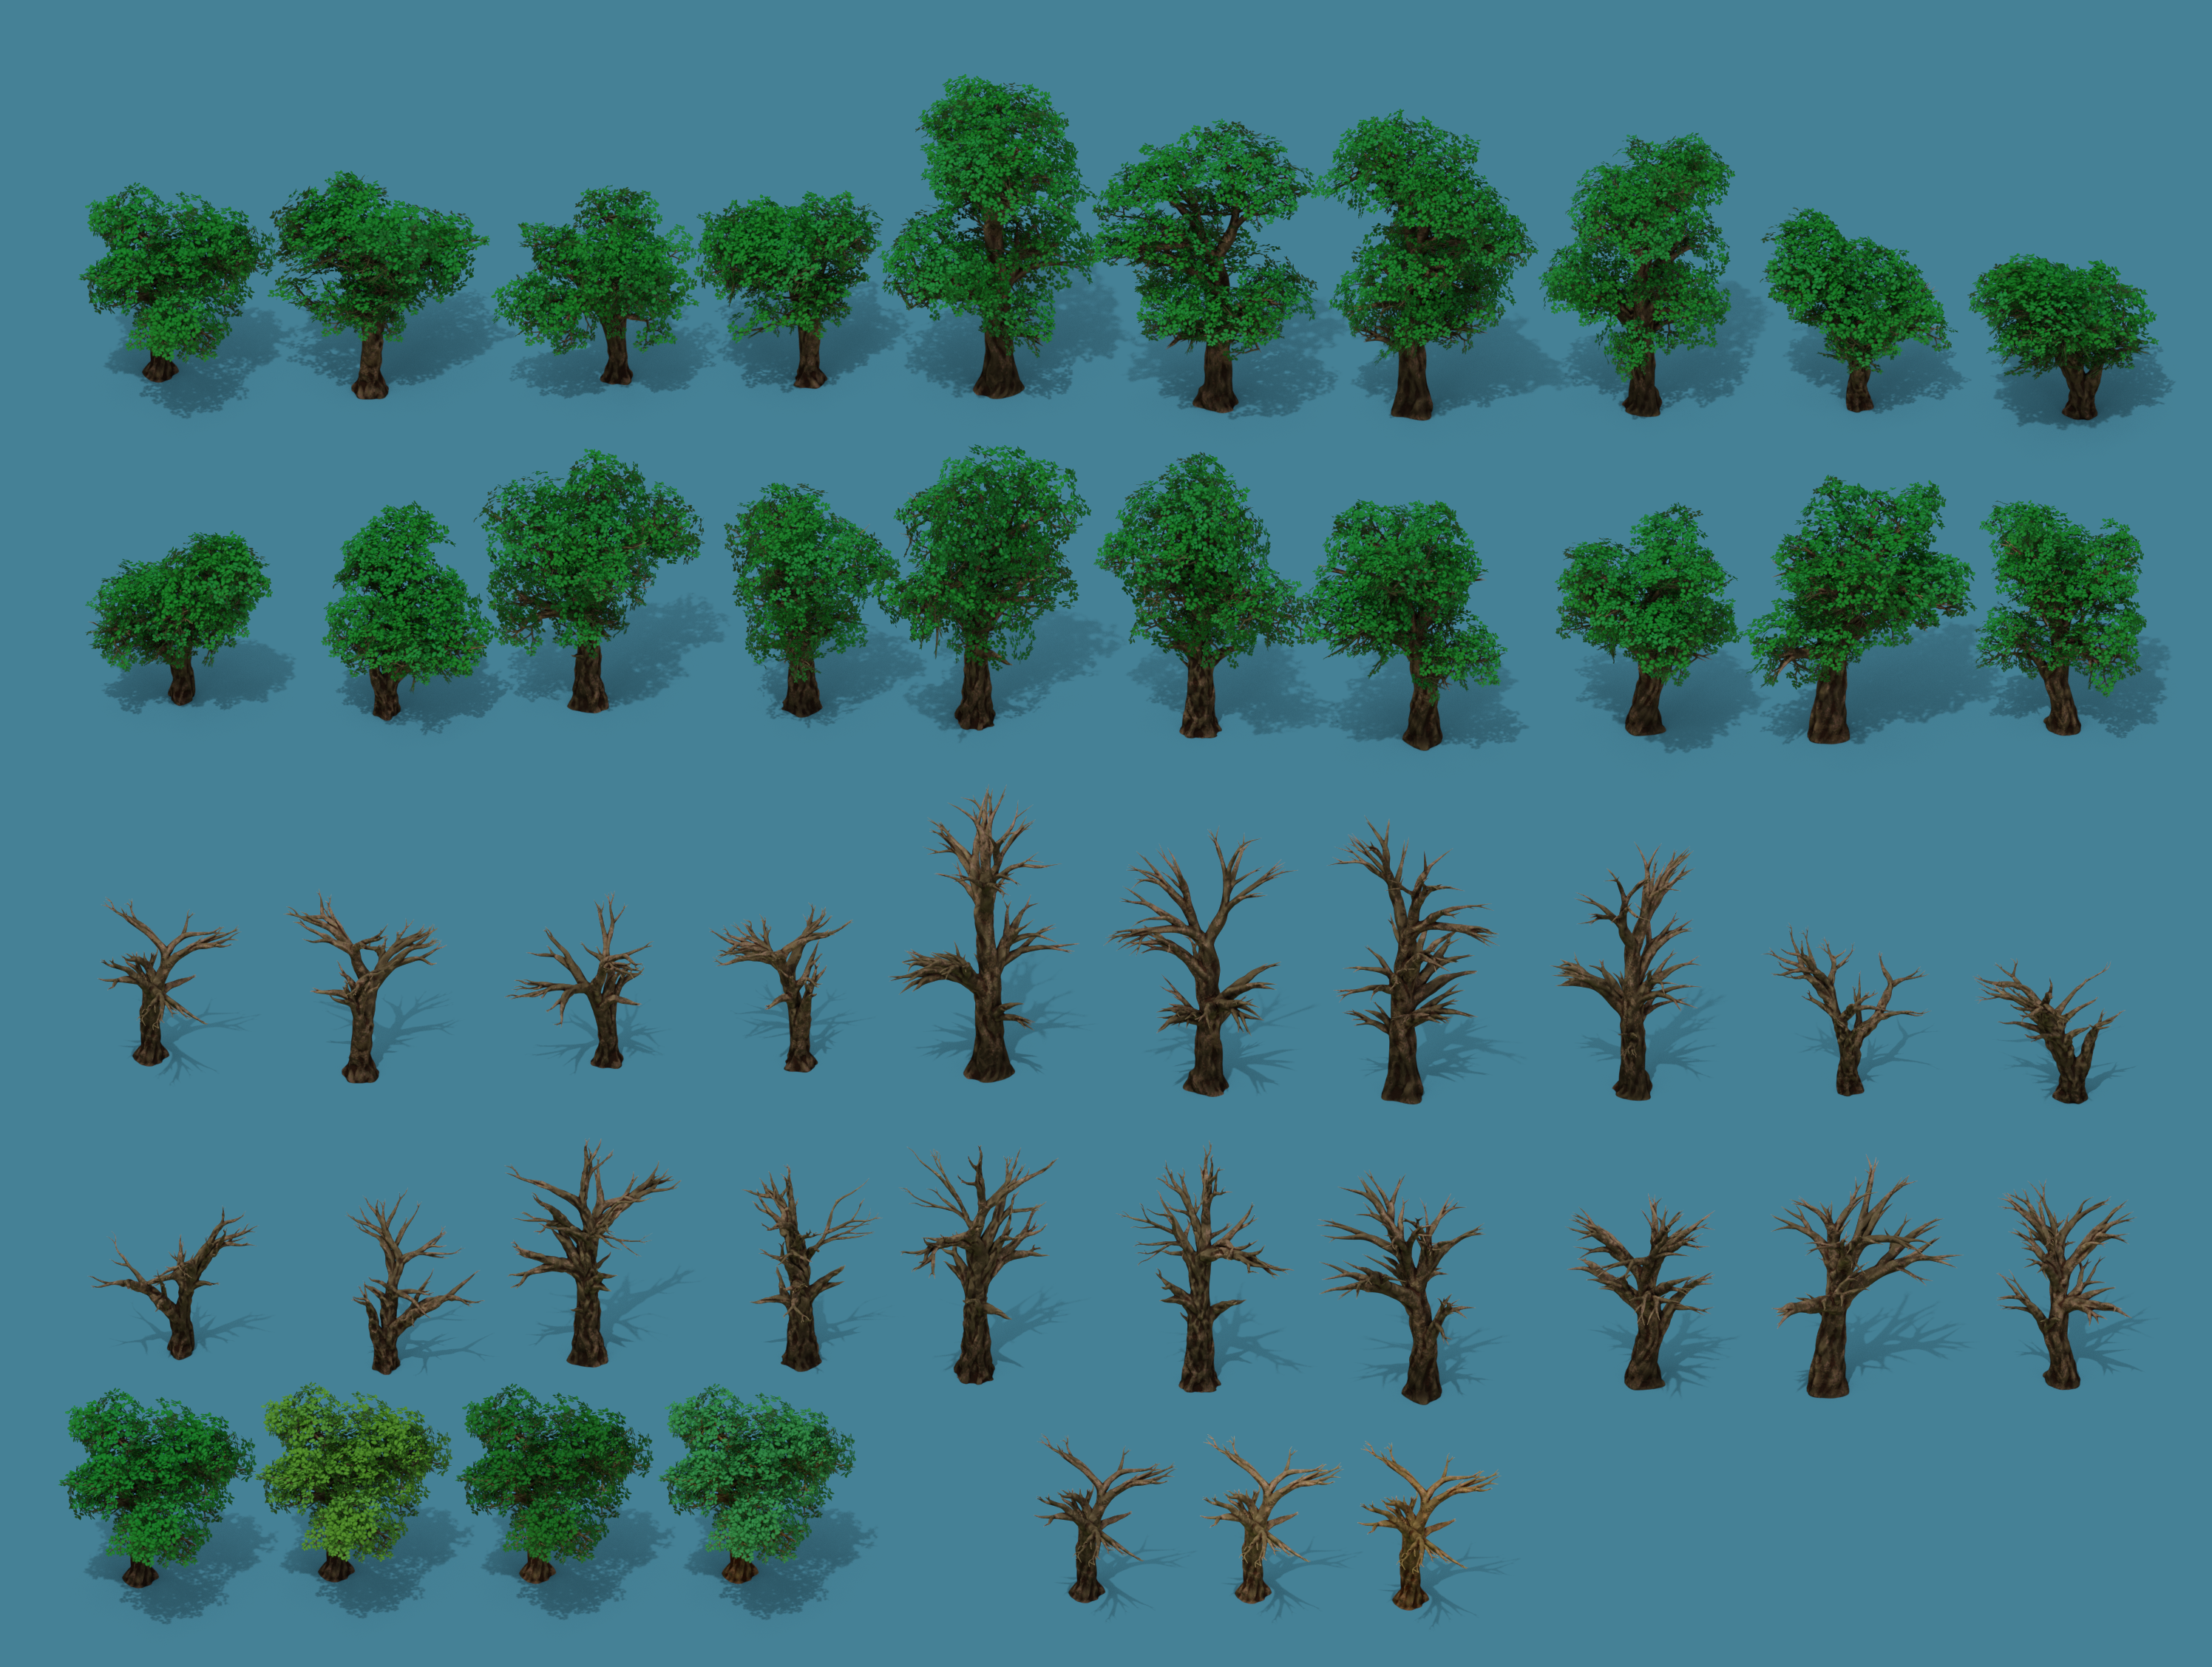 Спрайт земли. Тайлсет 2д. Tileset 2d деревья. Тайлсеты изометрия. Isometric для игр 2д растения.